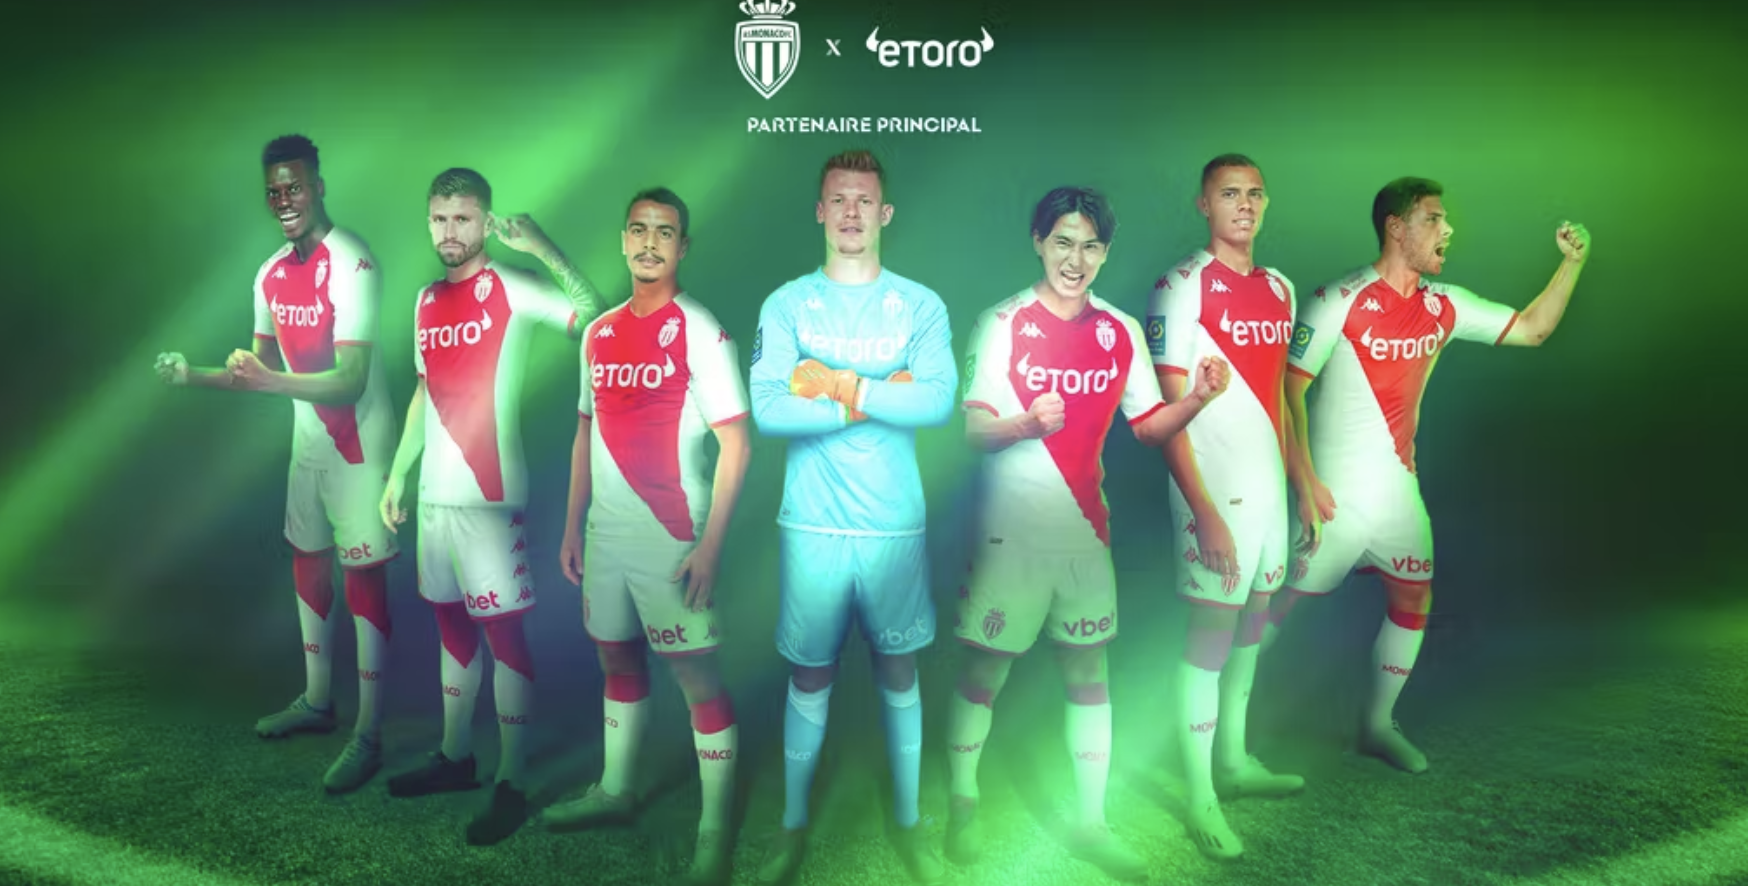 eToro devient sponsor principal du maillot de l'AS Monaco